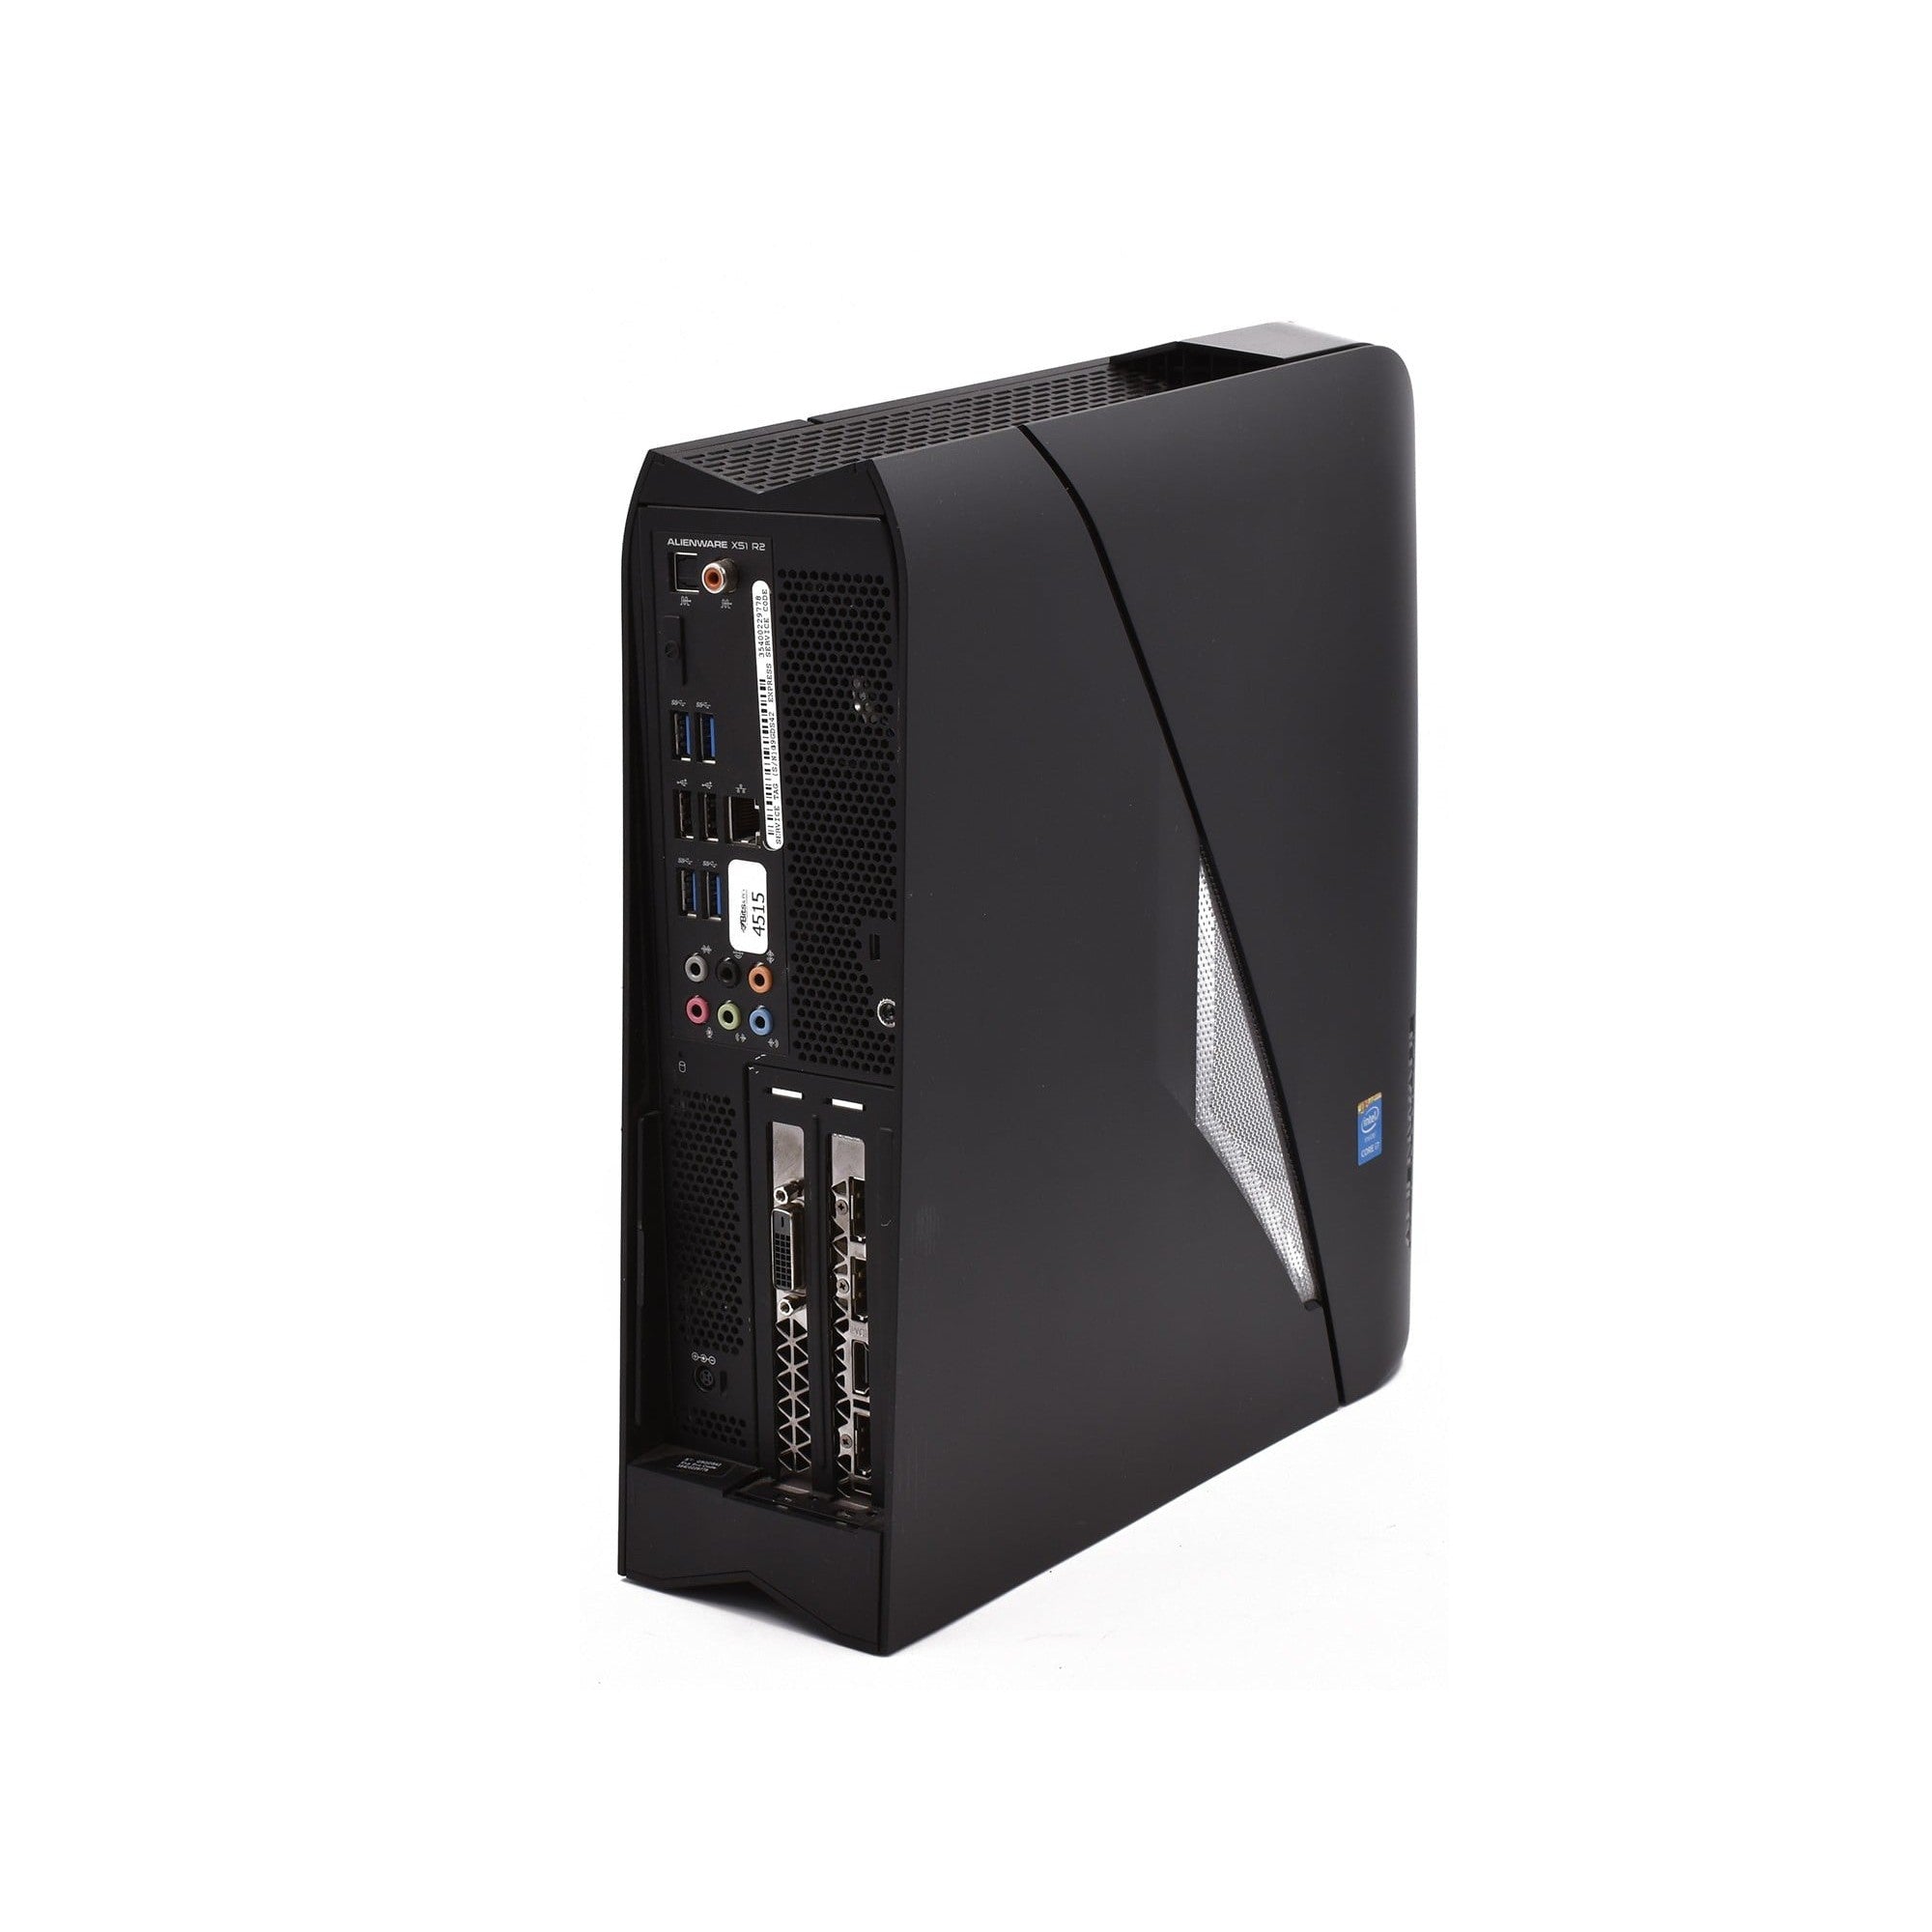 Alienware X51 PC Tower, Intel Core i7 1TB HDD 8GB RAM - Black - Refurbished Good